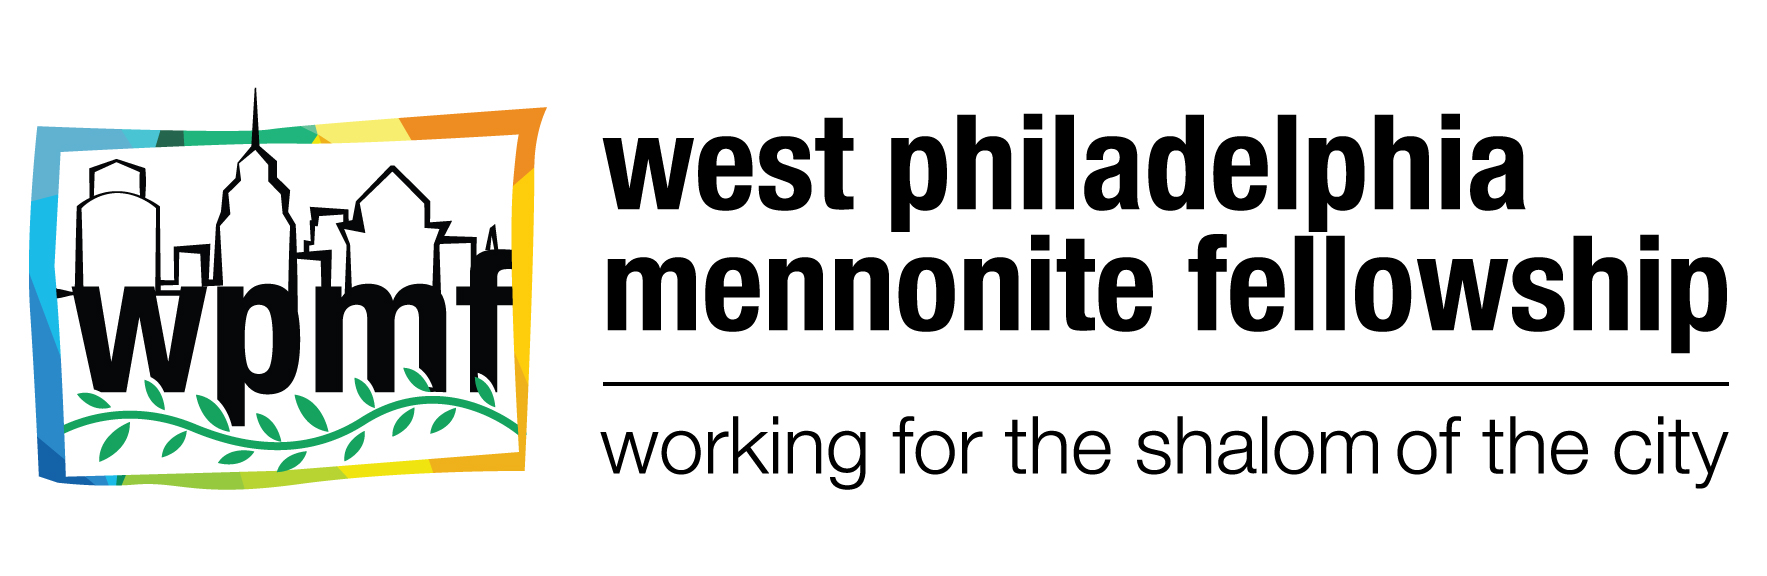 West Philadelphia Mennonite Fellowship